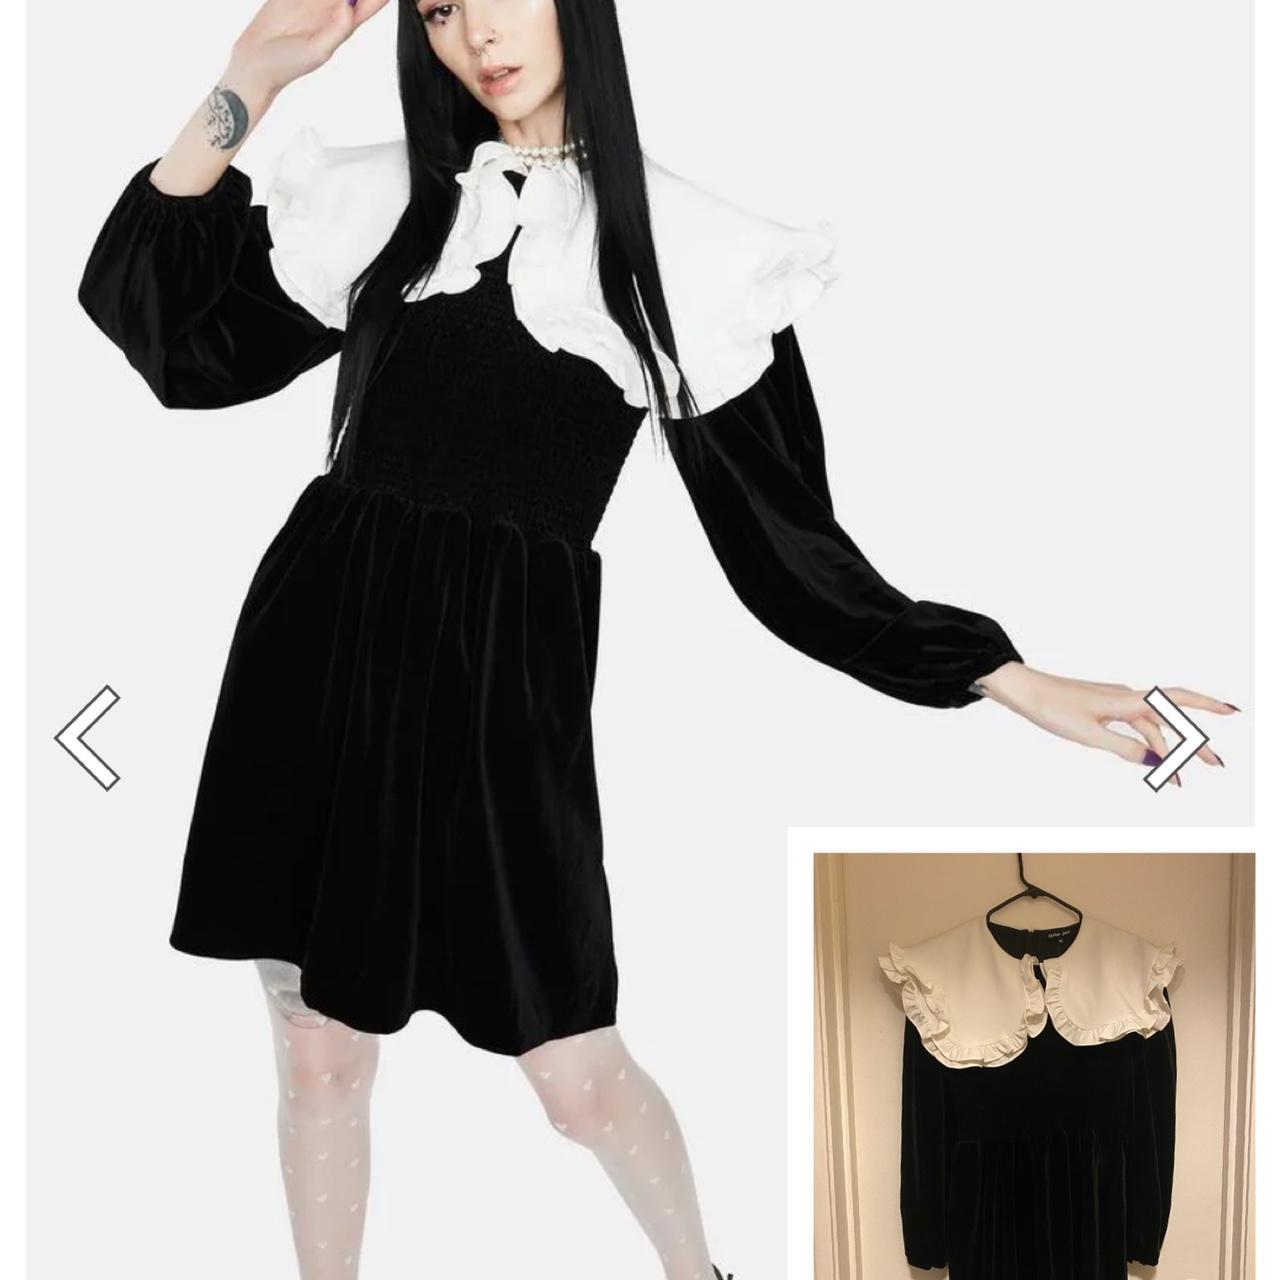 Sister Jane Women's Black and White Dress